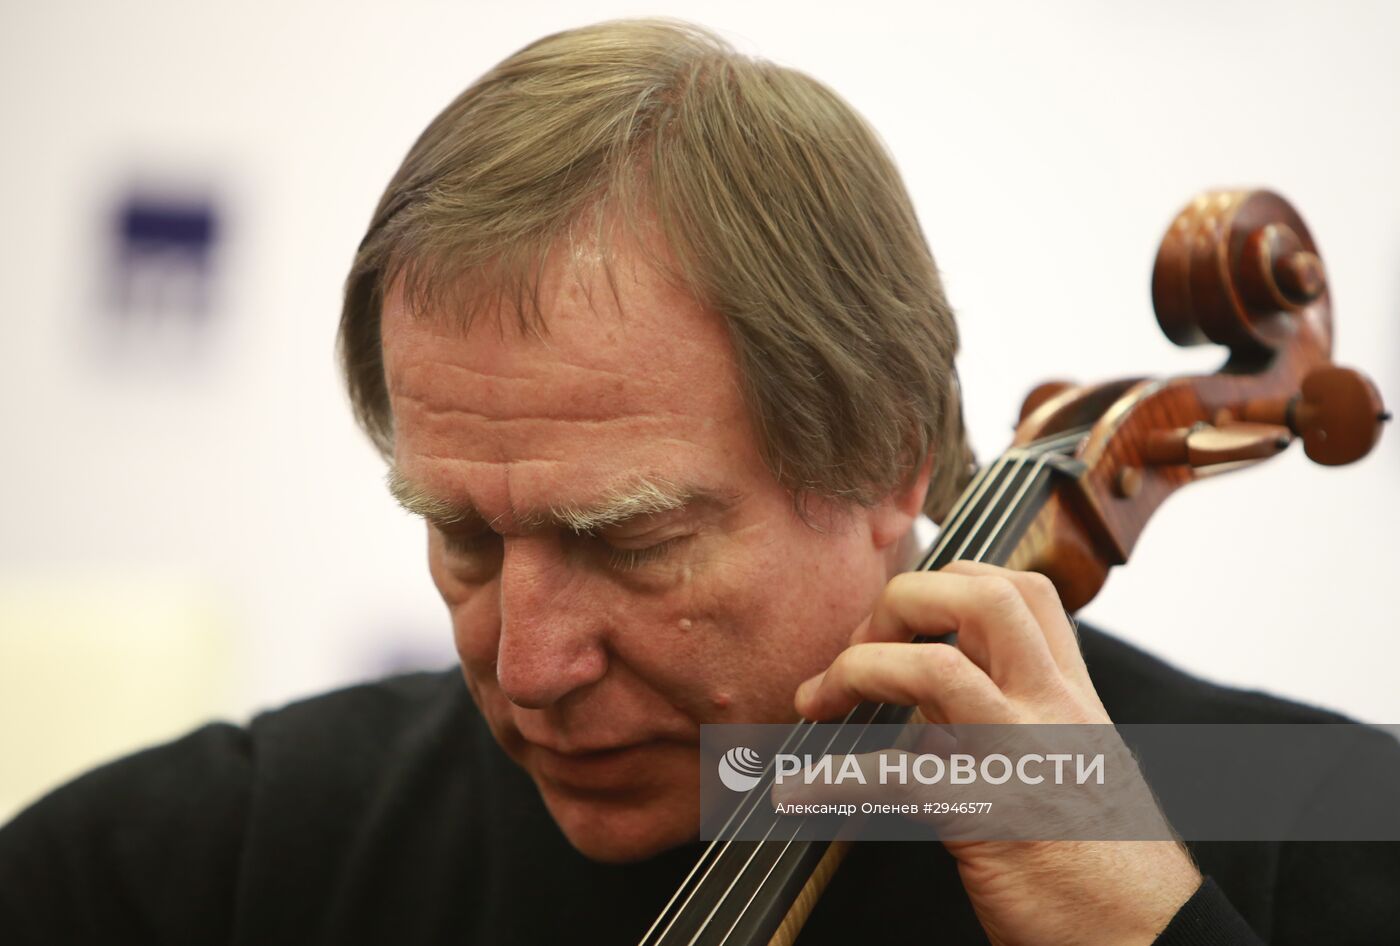 Пресс-конференция музыканта Сергея Ролдугина в Санкт-Петербурге